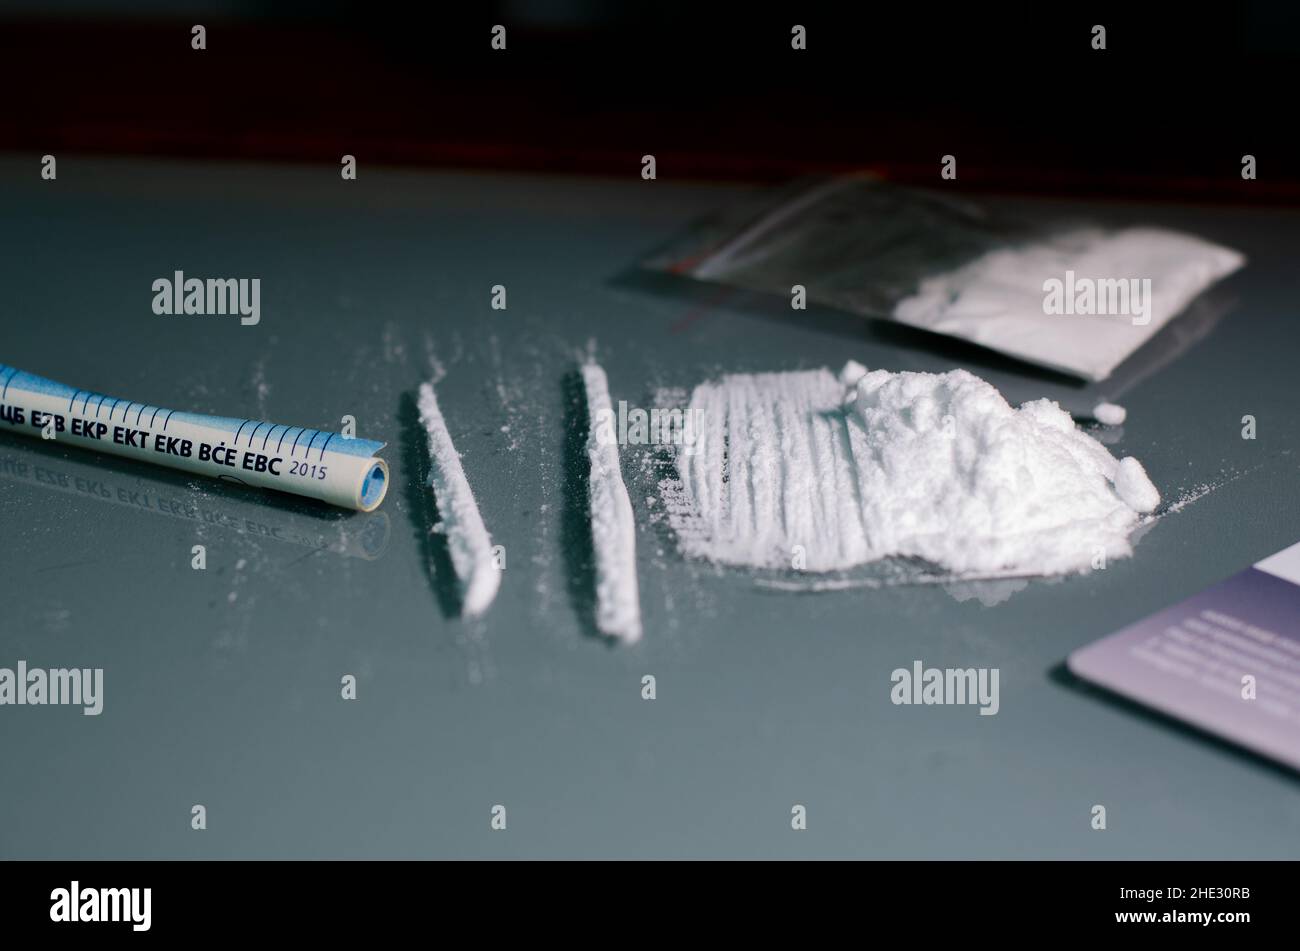 Enveloppe, pile et billet de banque roulé.La cocaïne est divisée en bandes sur un fond miroir clair.Gros plan.Concept de narcotiques. Banque D'Images